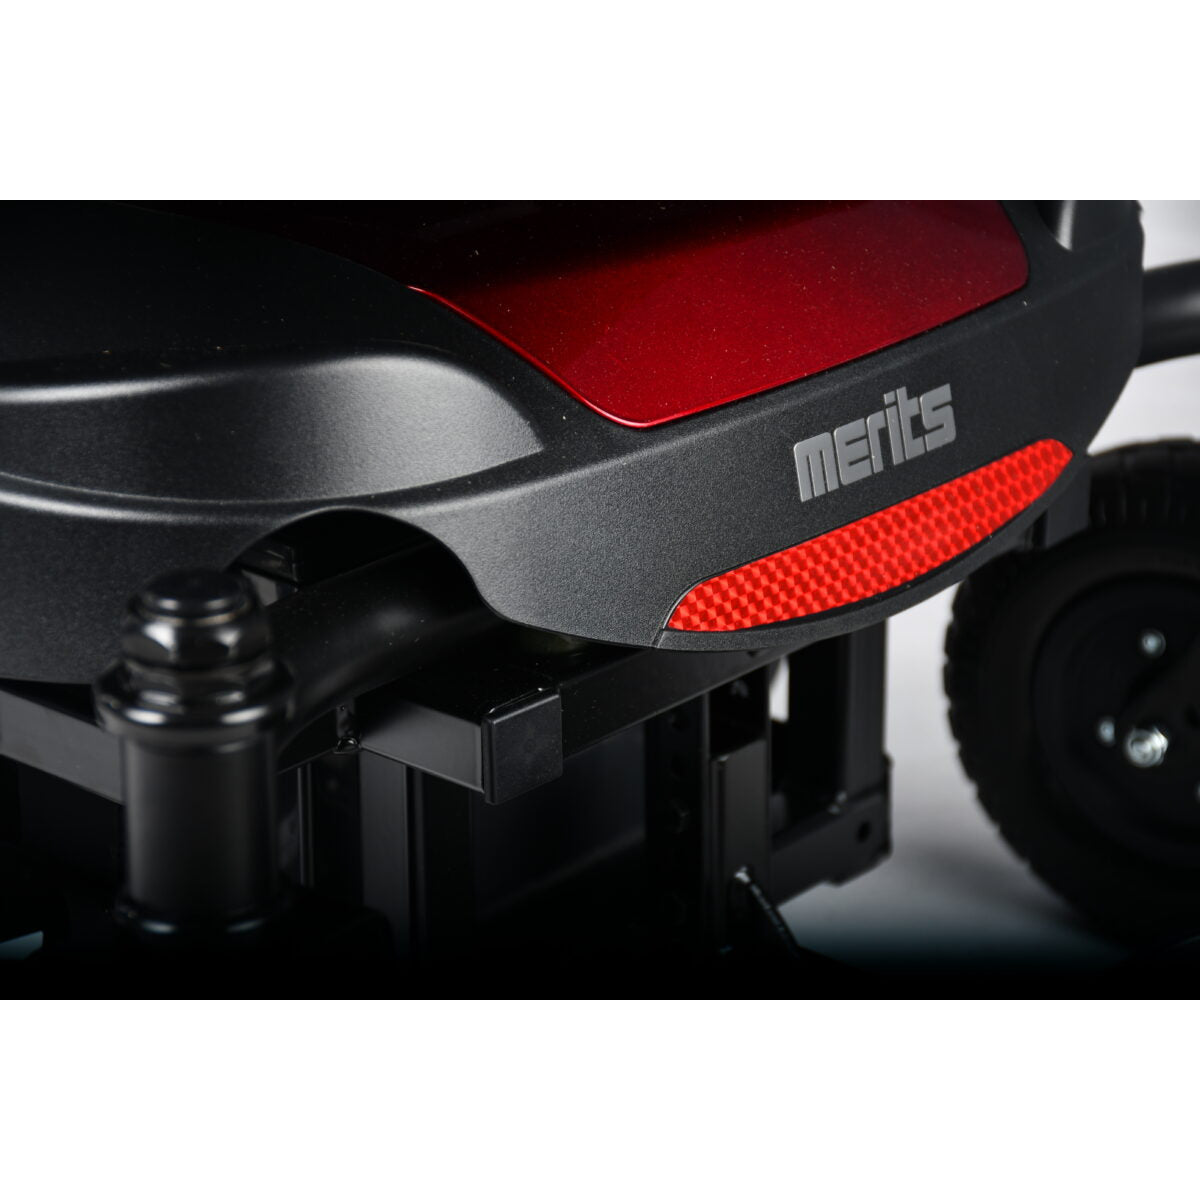 Merits Health Regal P310 Power Wheelchair